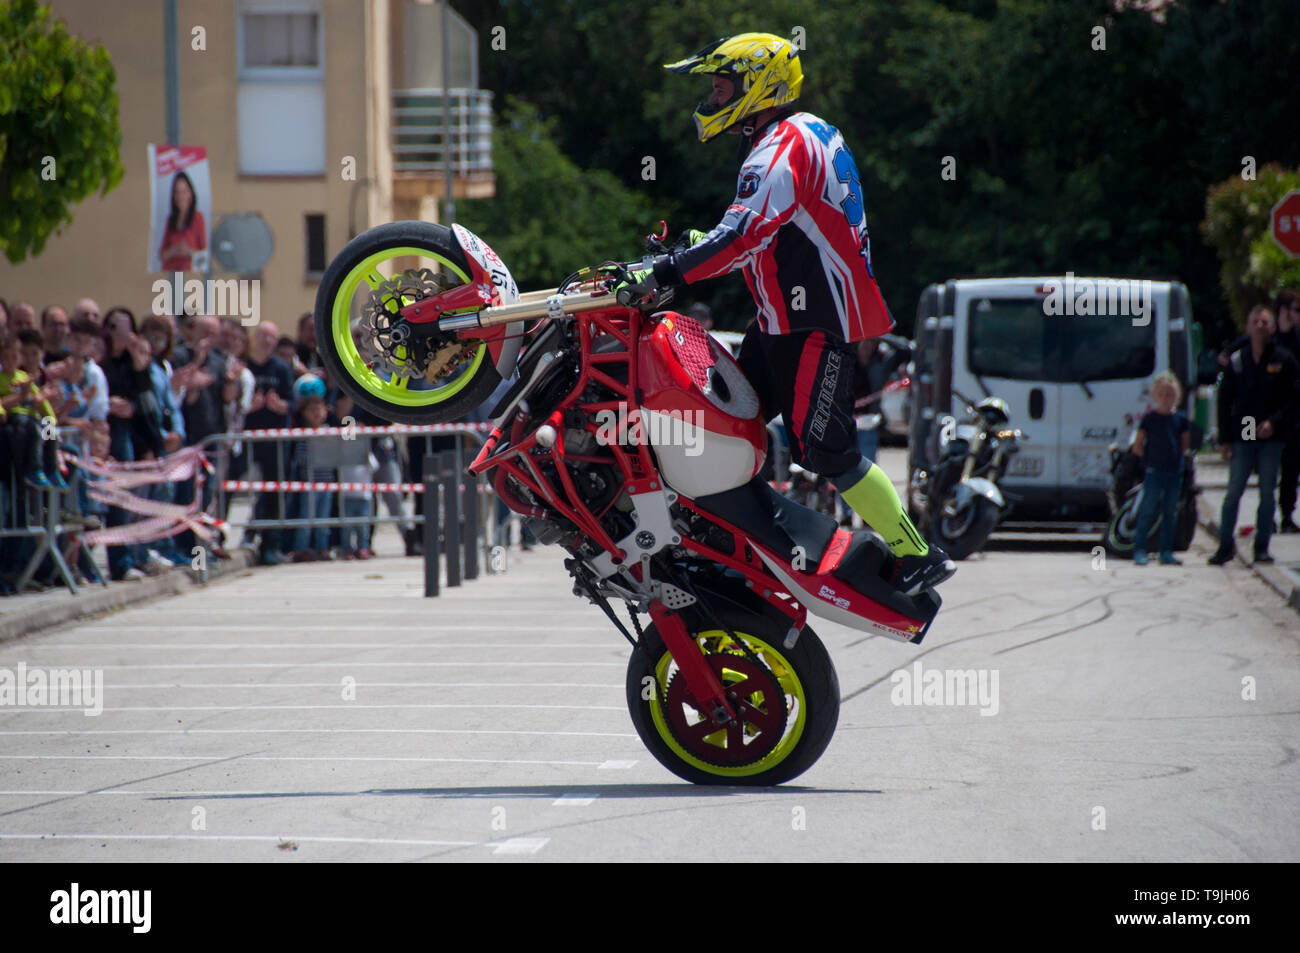 Motorrad stunt Rider in Aktion Katalonien, Spanien Stockfoto